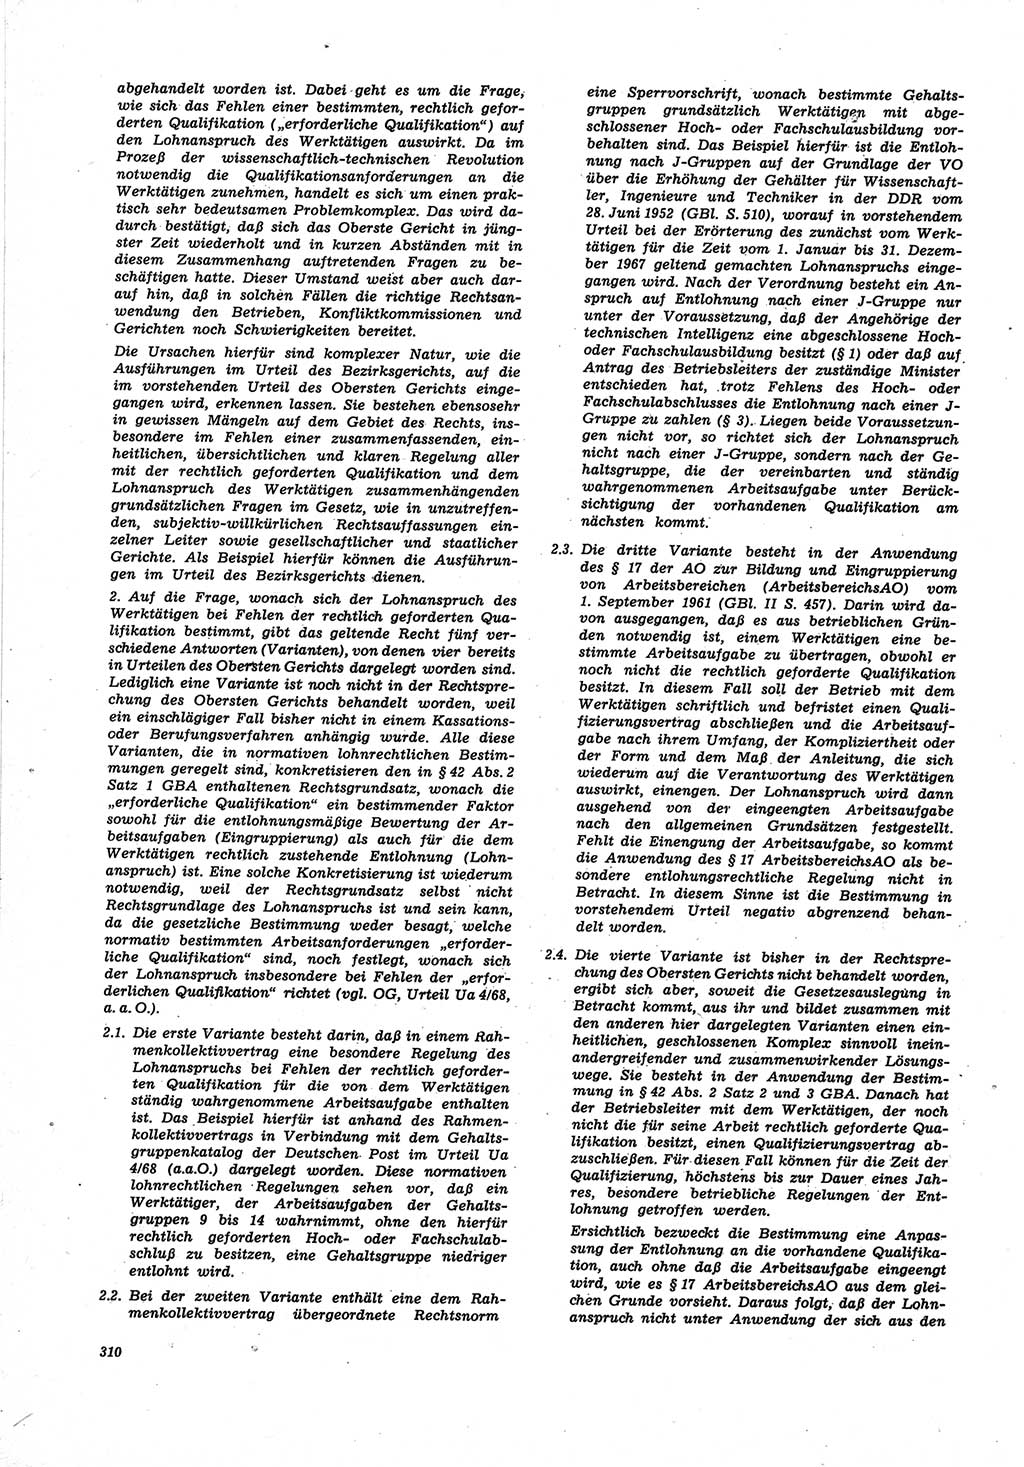 Neue Justiz (NJ), Zeitschrift für Recht und Rechtswissenschaft [Deutsche Demokratische Republik (DDR)], 25. Jahrgang 1971, Seite 310 (NJ DDR 1971, S. 310)